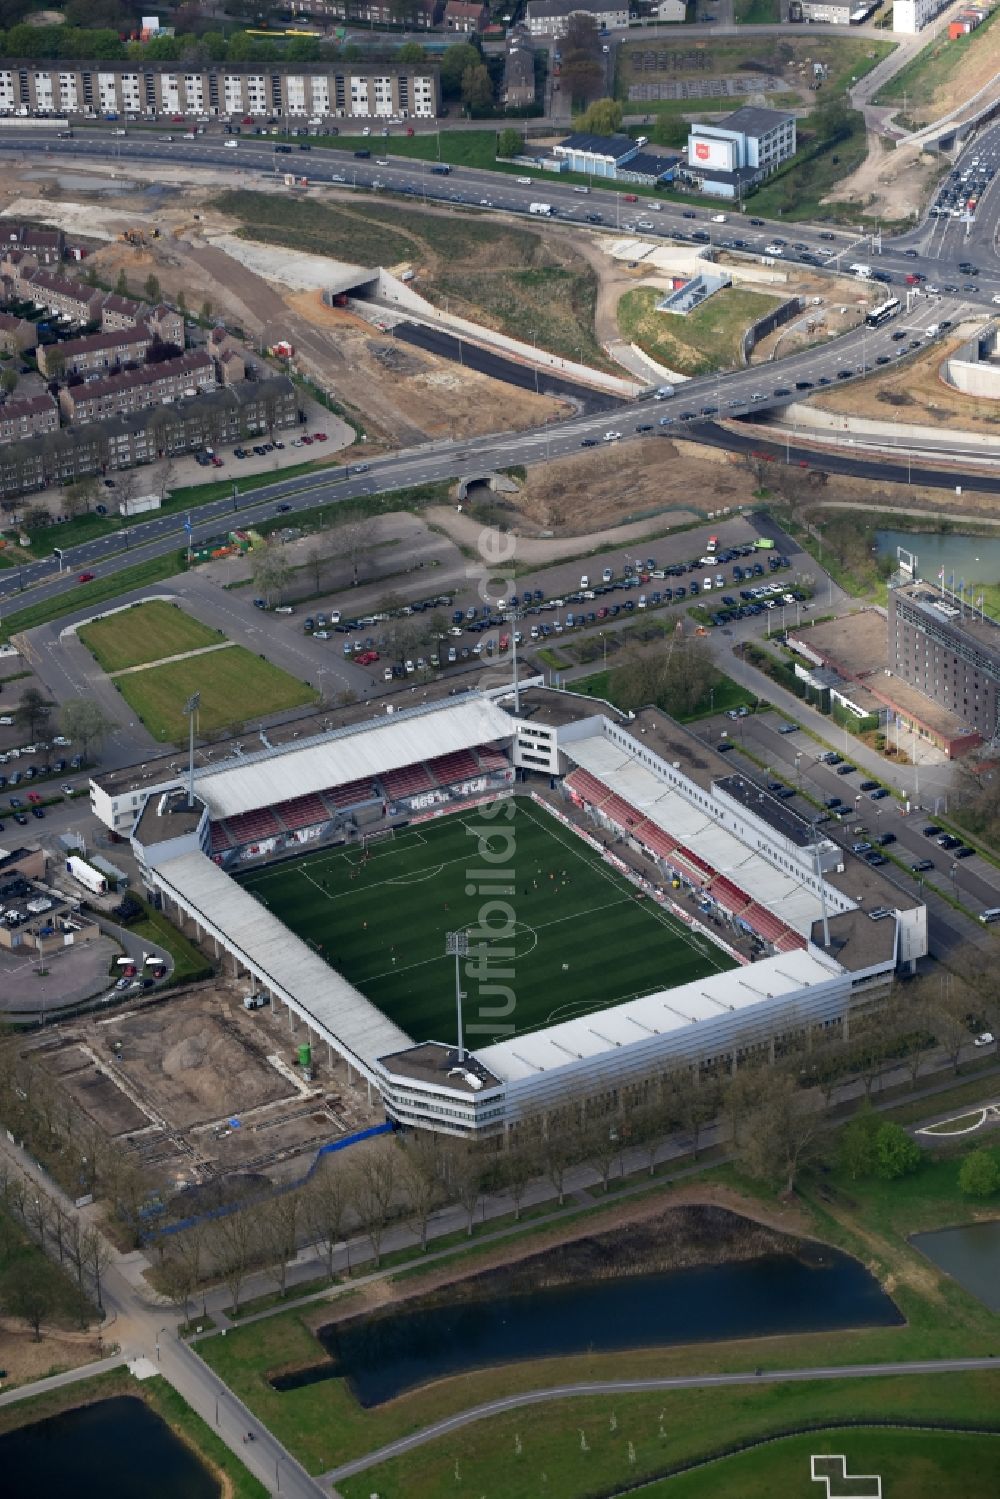 Maastricht aus der Vogelperspektive: Sportstätten-Gelände der Arena des Stadion in Maastricht in Limburg, Niederlande